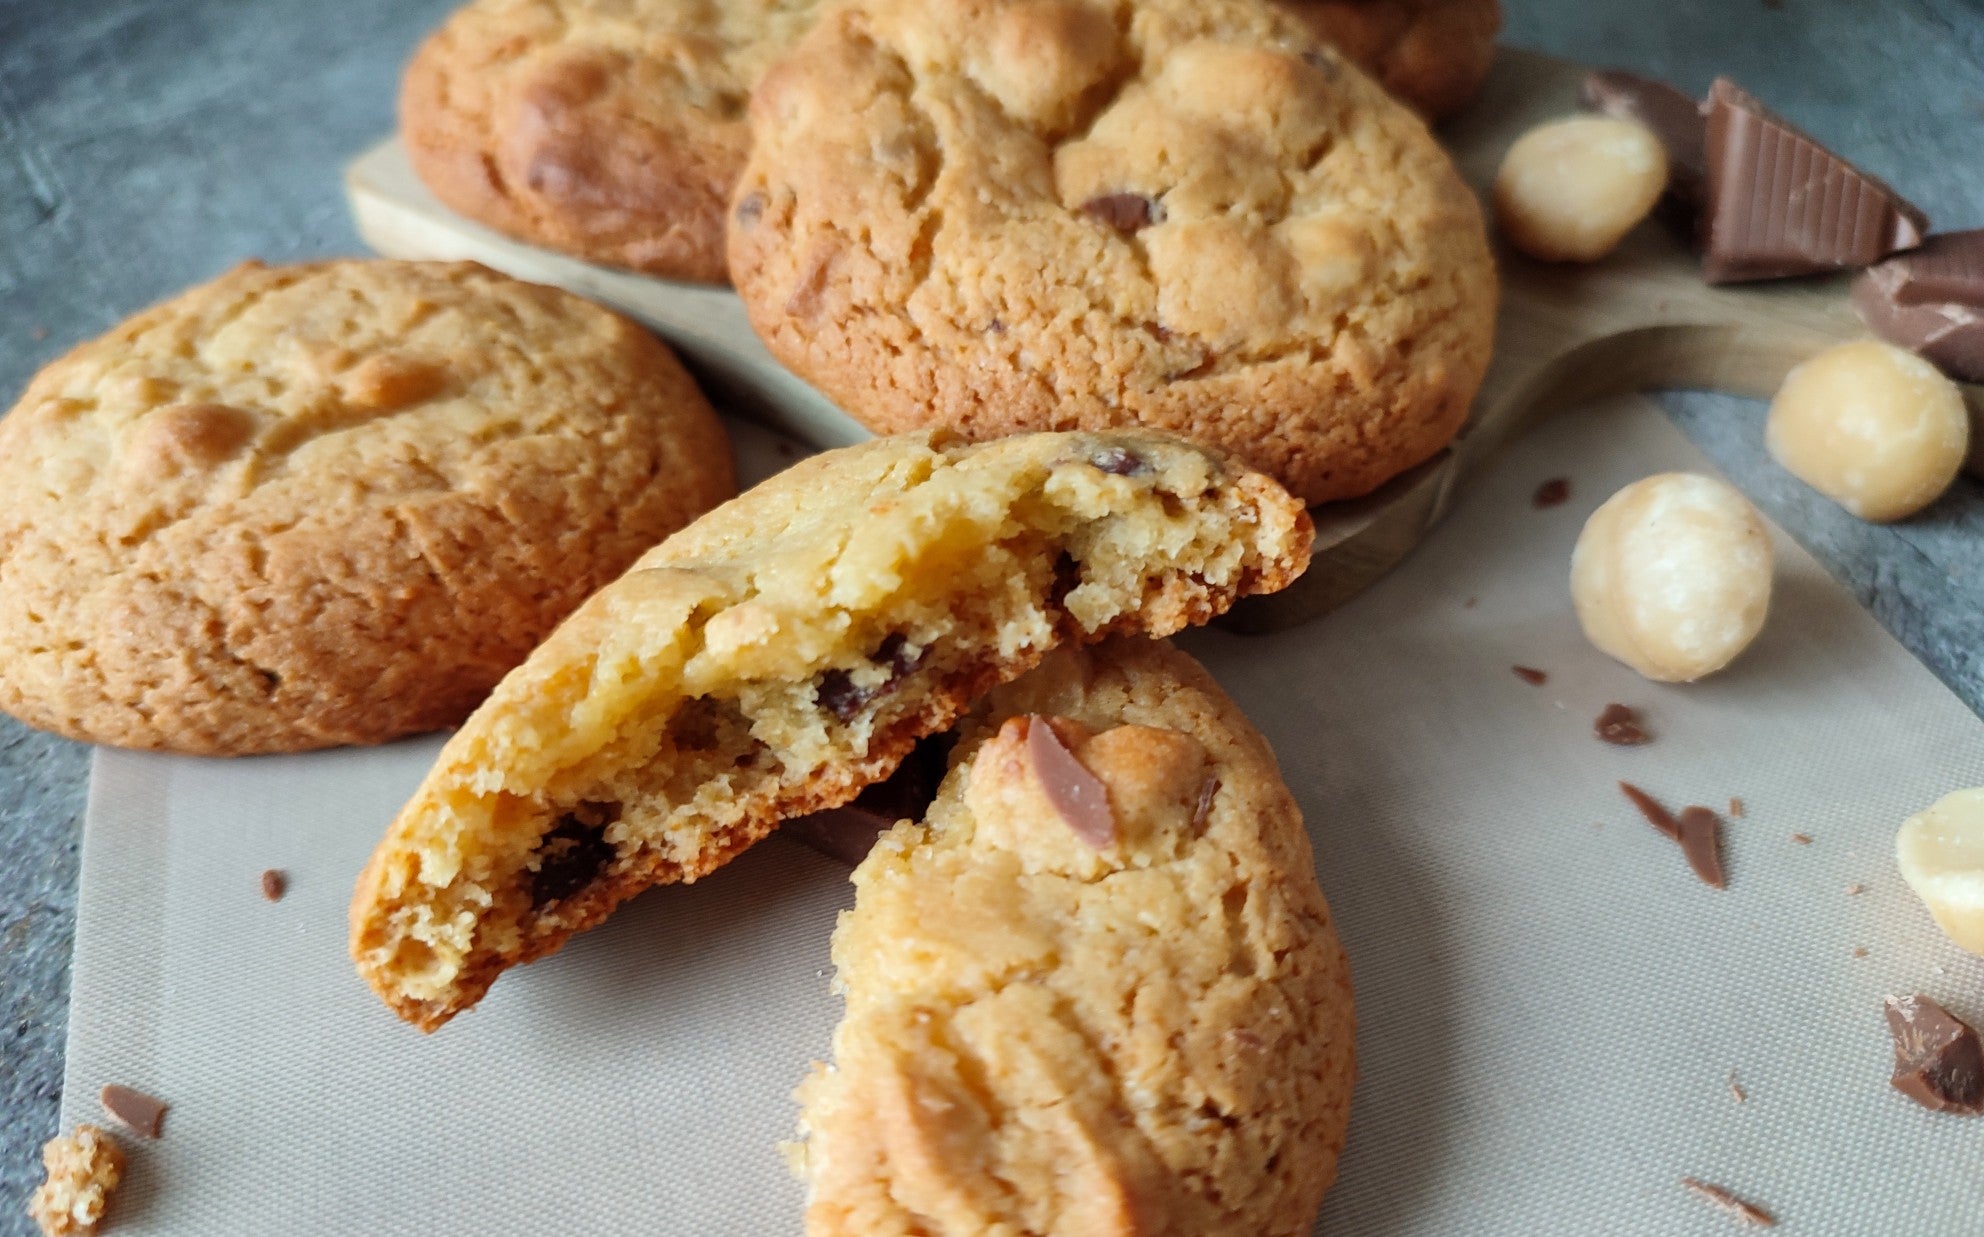 Gluten-free baking: Choco Chip Macadamia Cookies